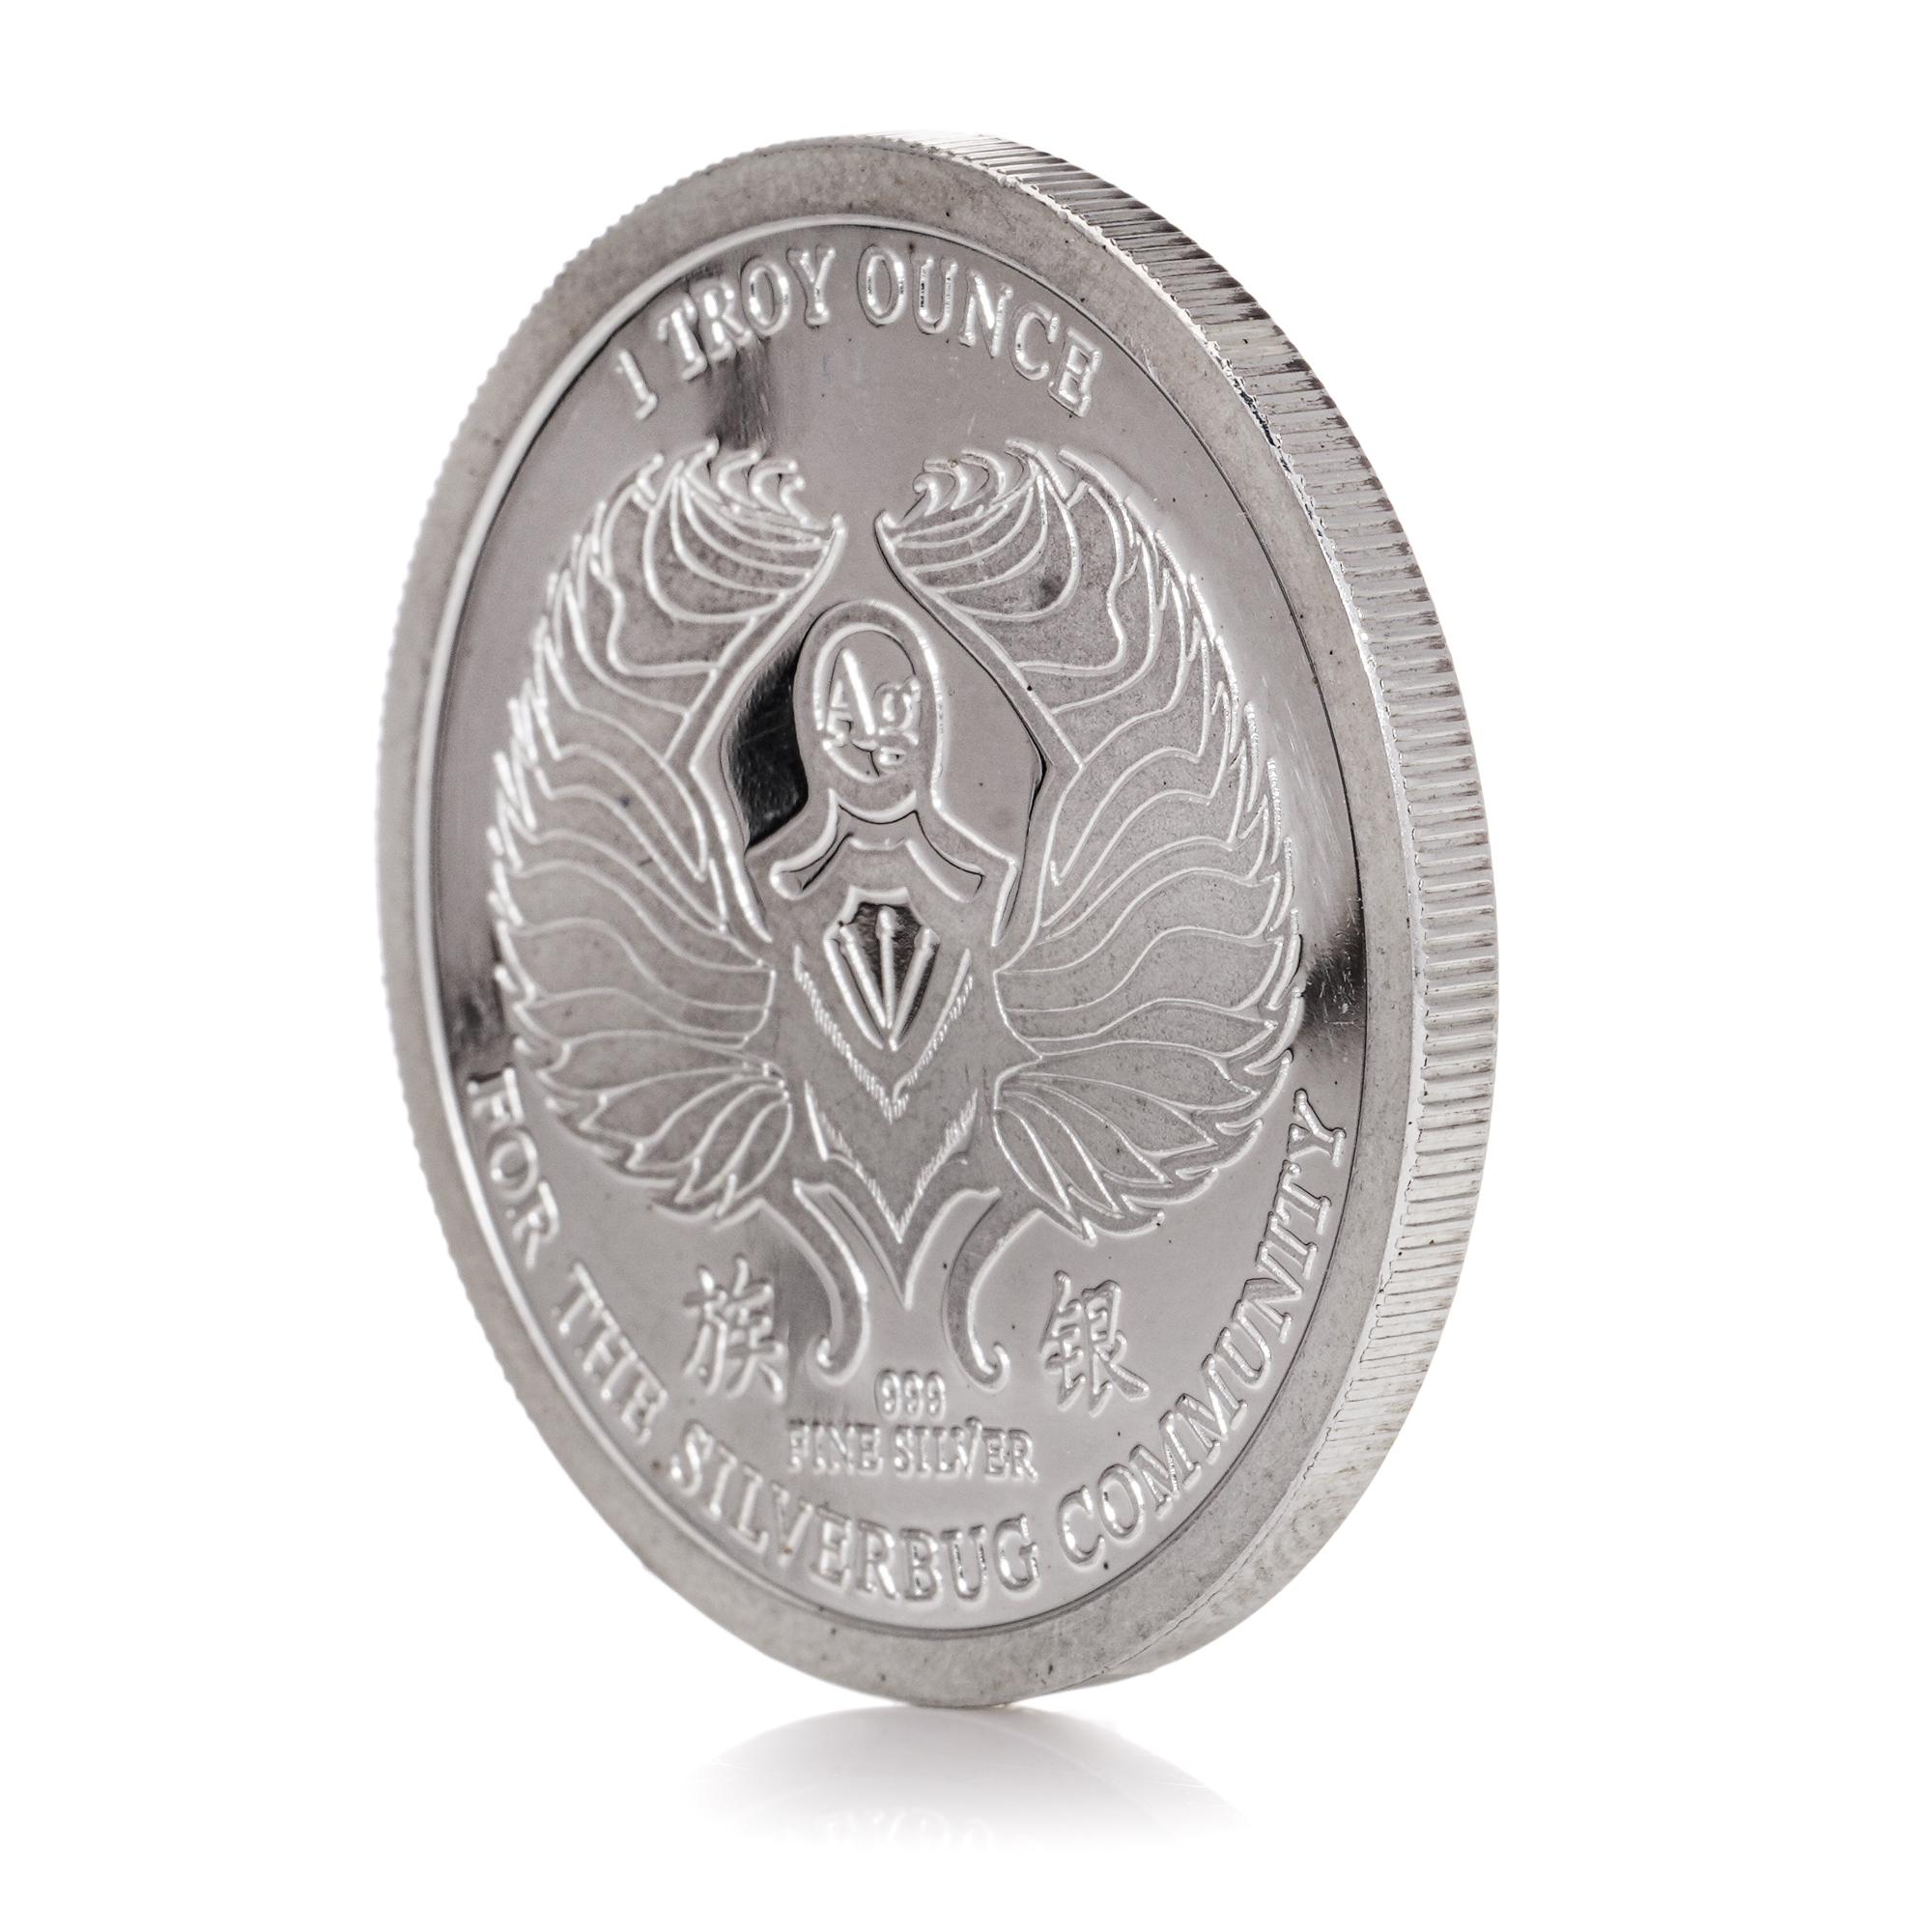 North American The 2014 1 oz Silverbug Commemorative Silver Coin .999 silver  For Sale